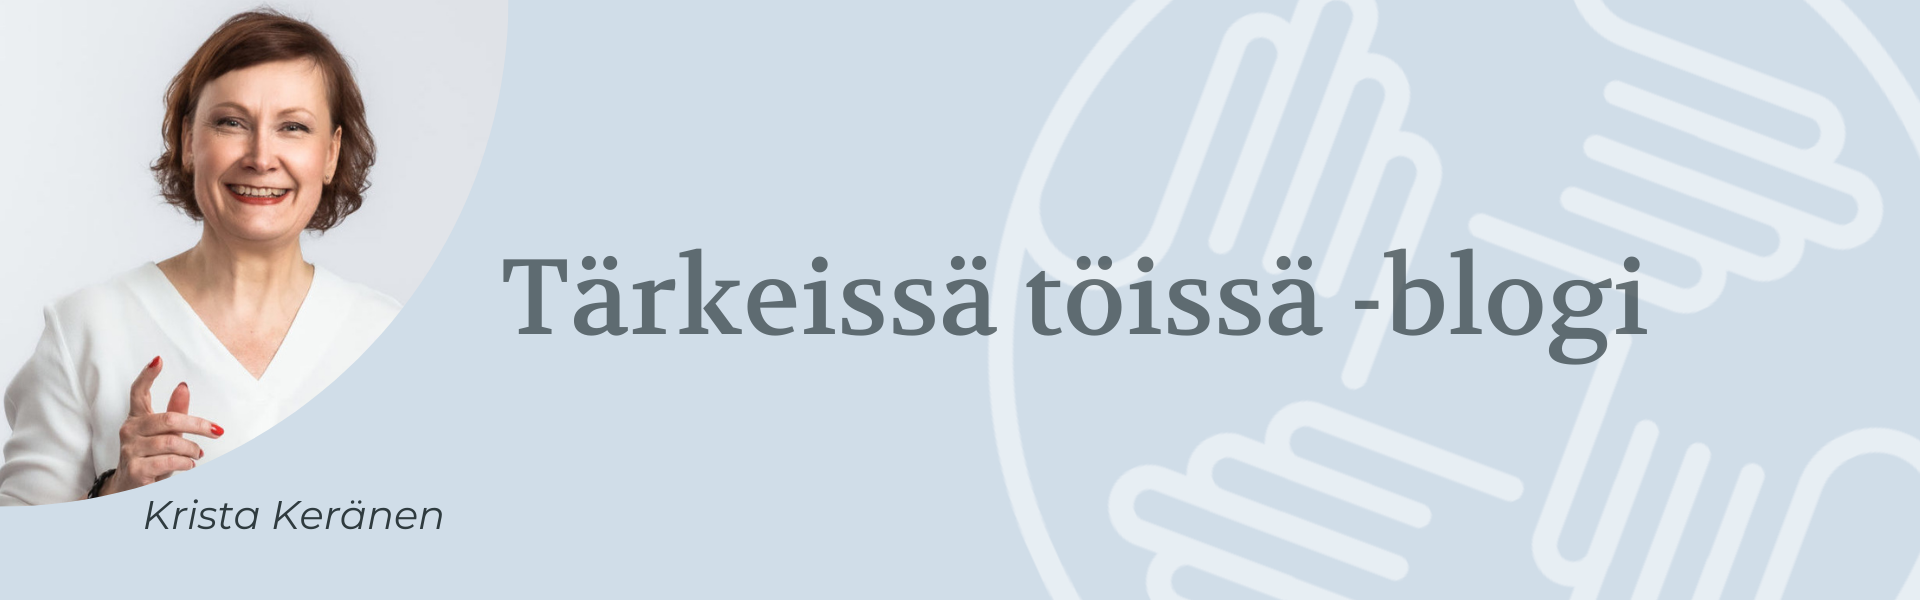 Krista Keränen blogi